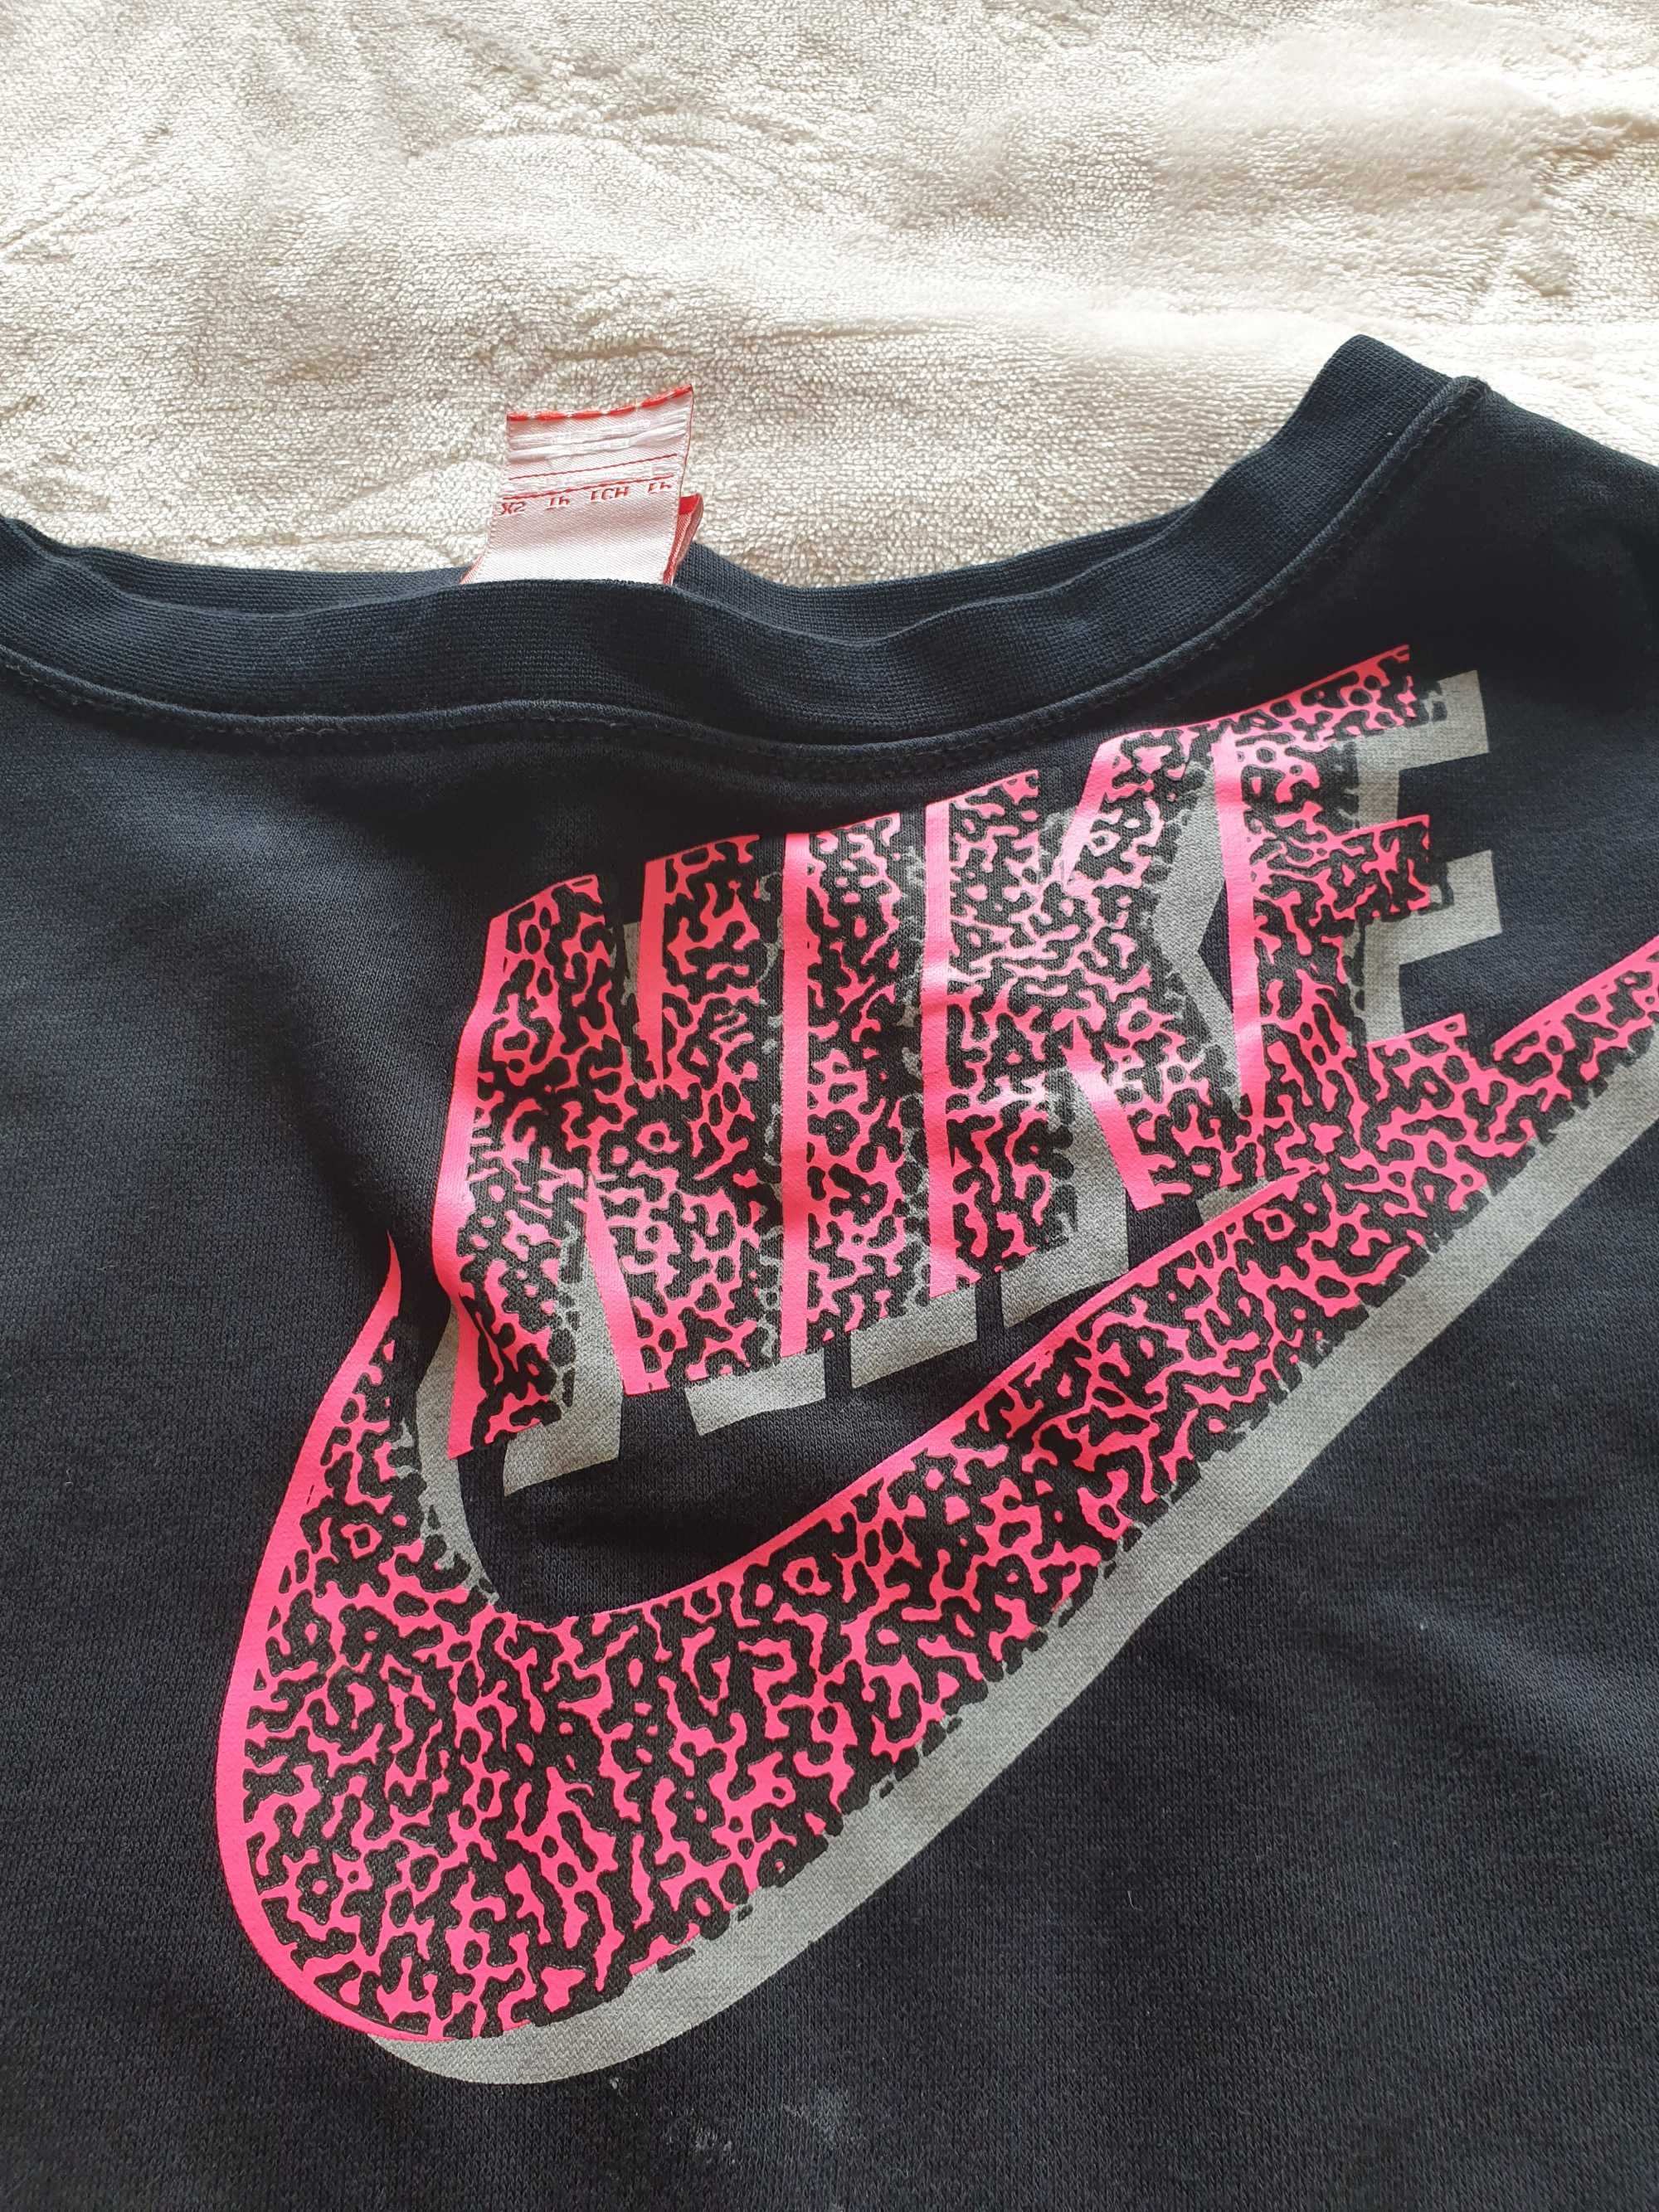 Sweat marca Nike original tam. 7-8 anos usada em bom estado